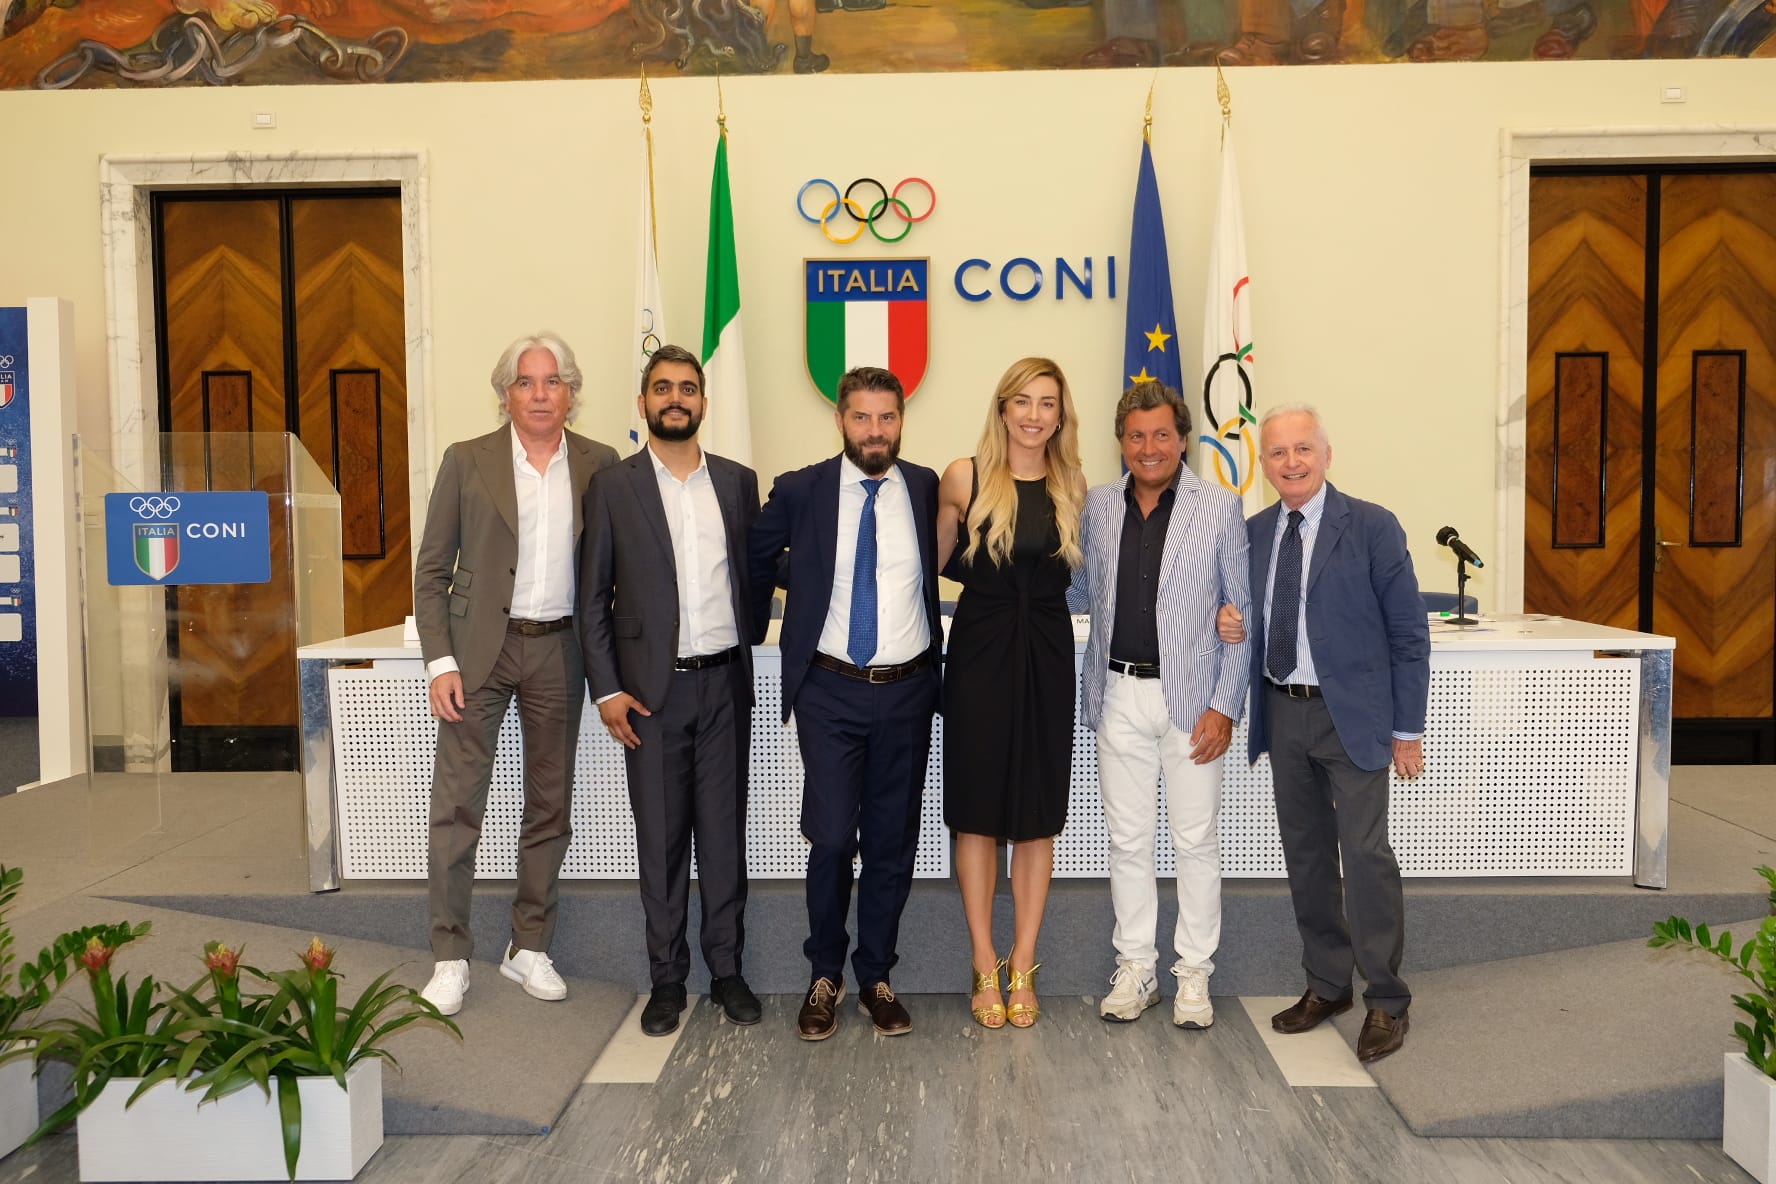 Premio-Internazionale-Fair-Play-Menarini-23-giugno-2022-CONI-Ivan-Zazzaroni-Cosimo-Guccione-Ennio-Troiano-SIlvia-Salis-Mario-Agnelli-Giampaolo-Bellardi-Foto-1.jpg